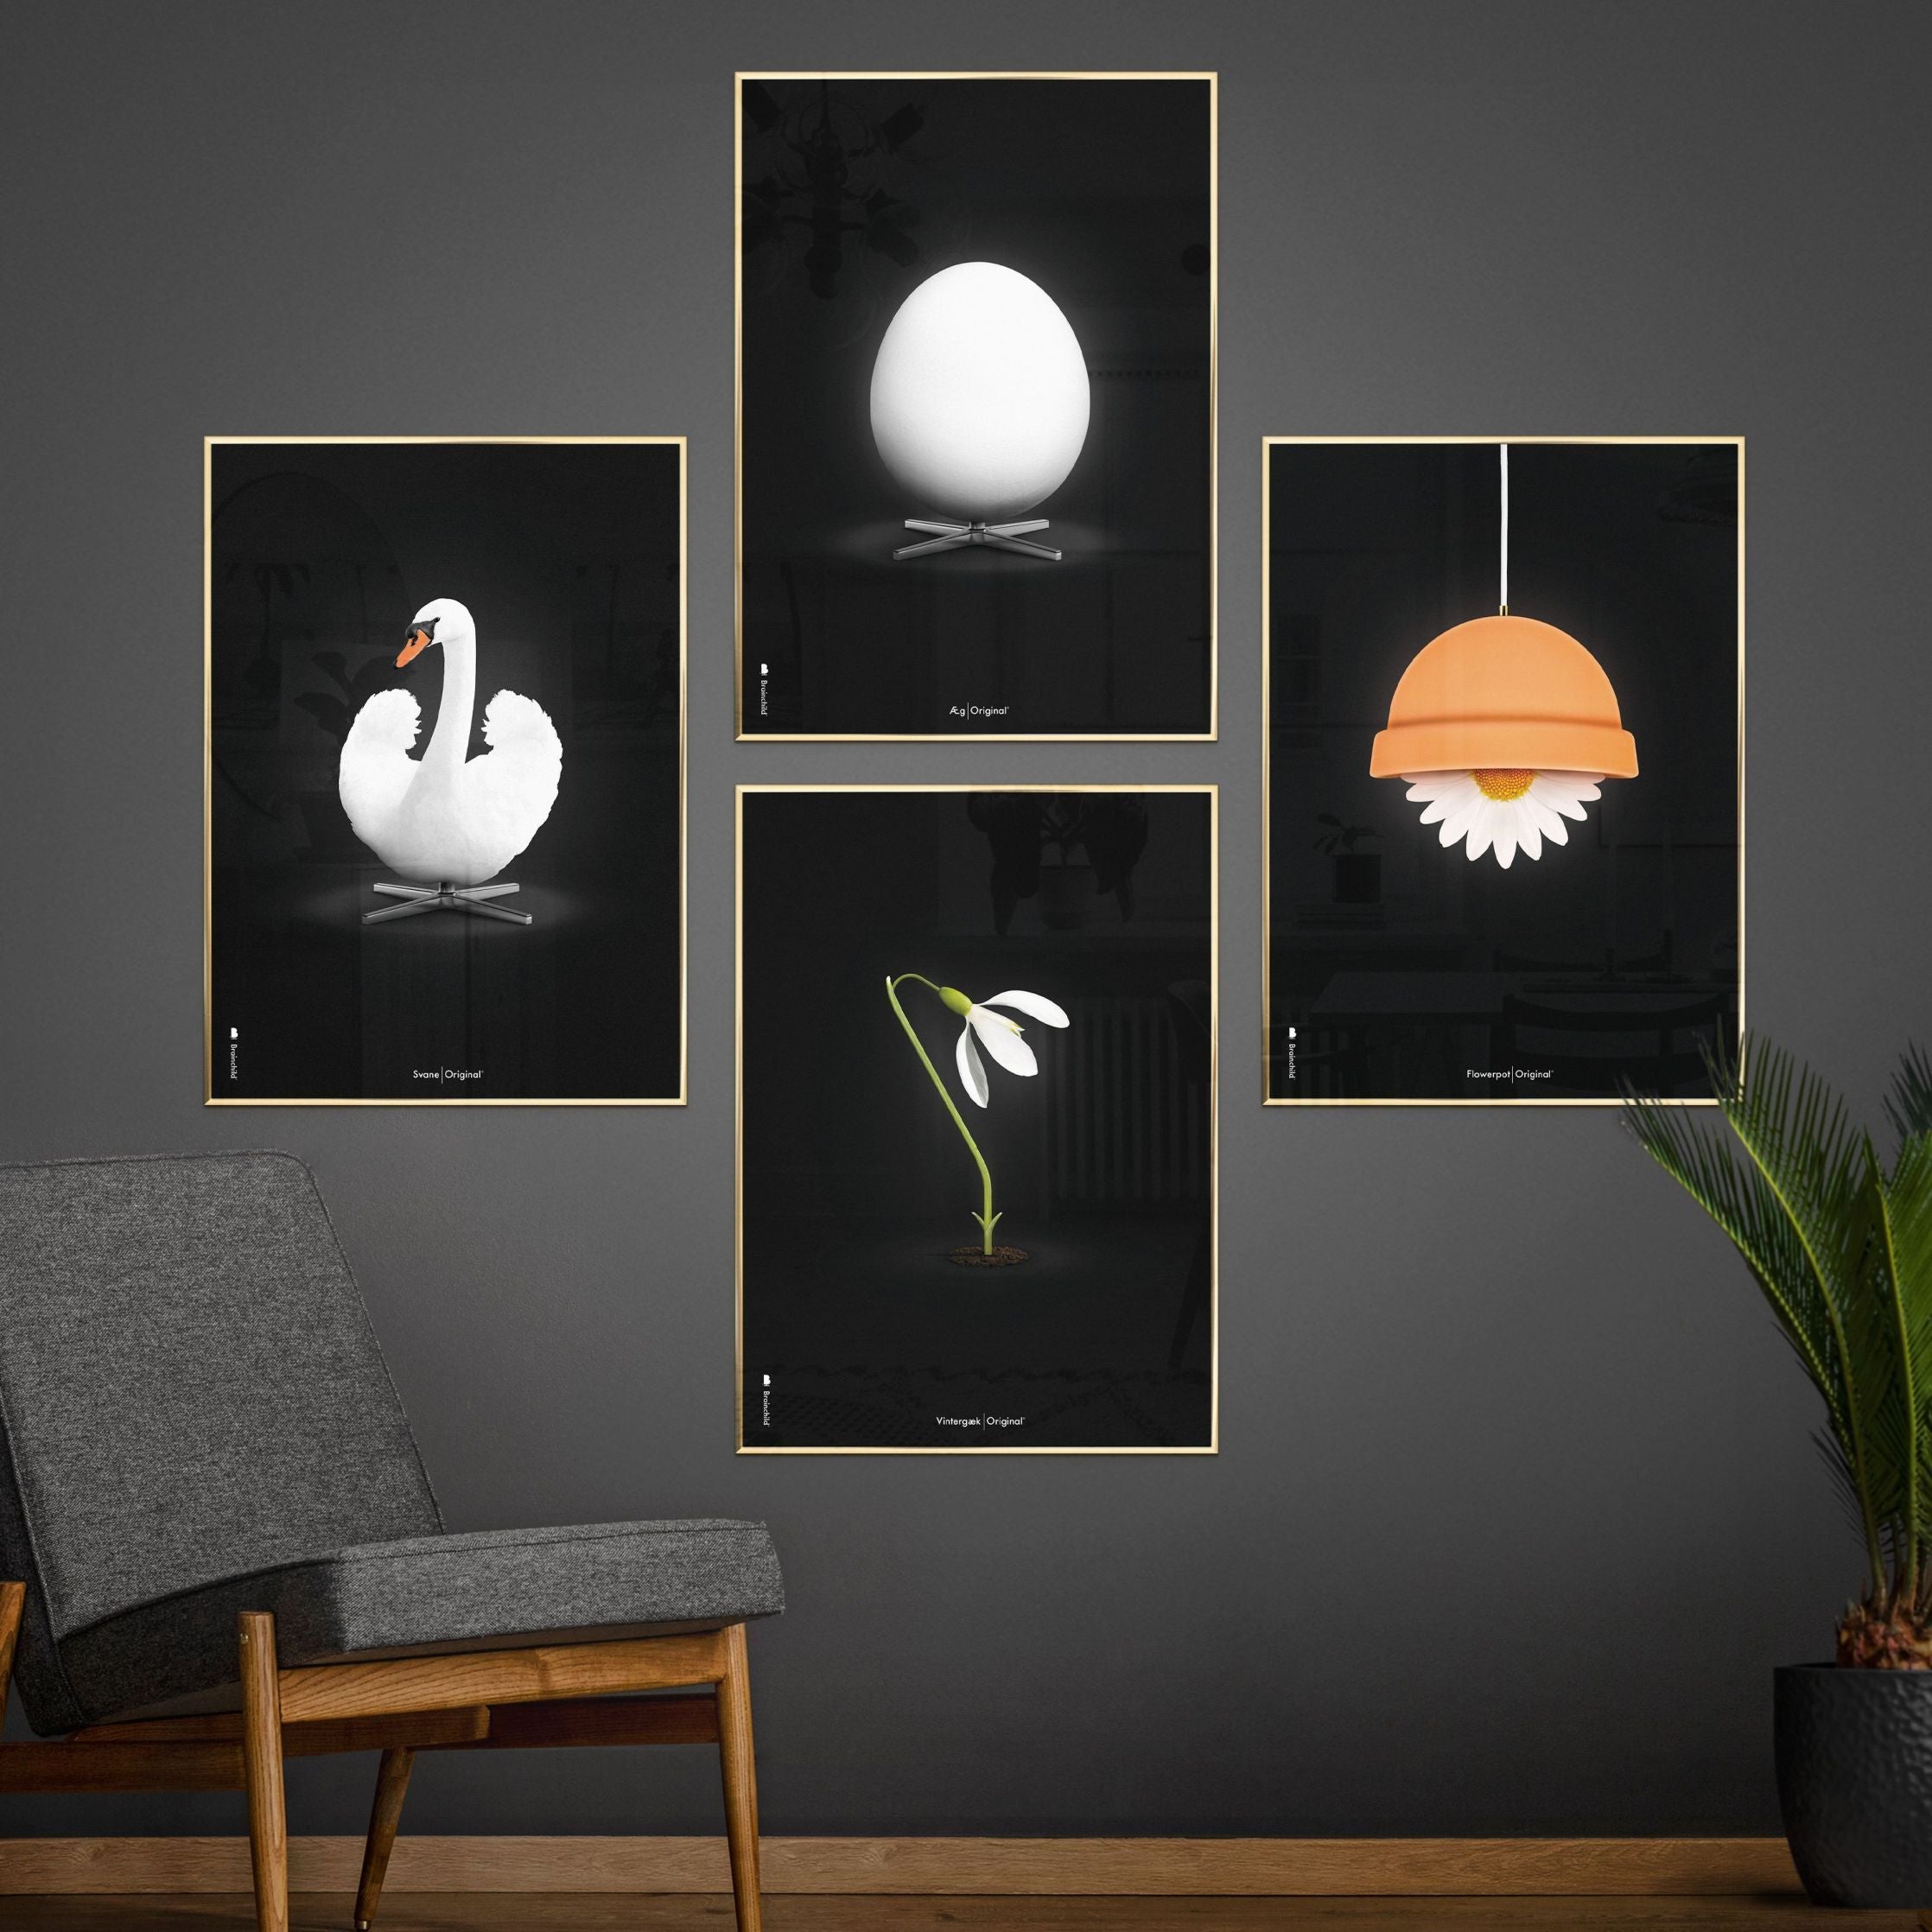 Poster classico di FlowerPot Brainchild, cornice in ottone 50x70 cm, sfondo nero